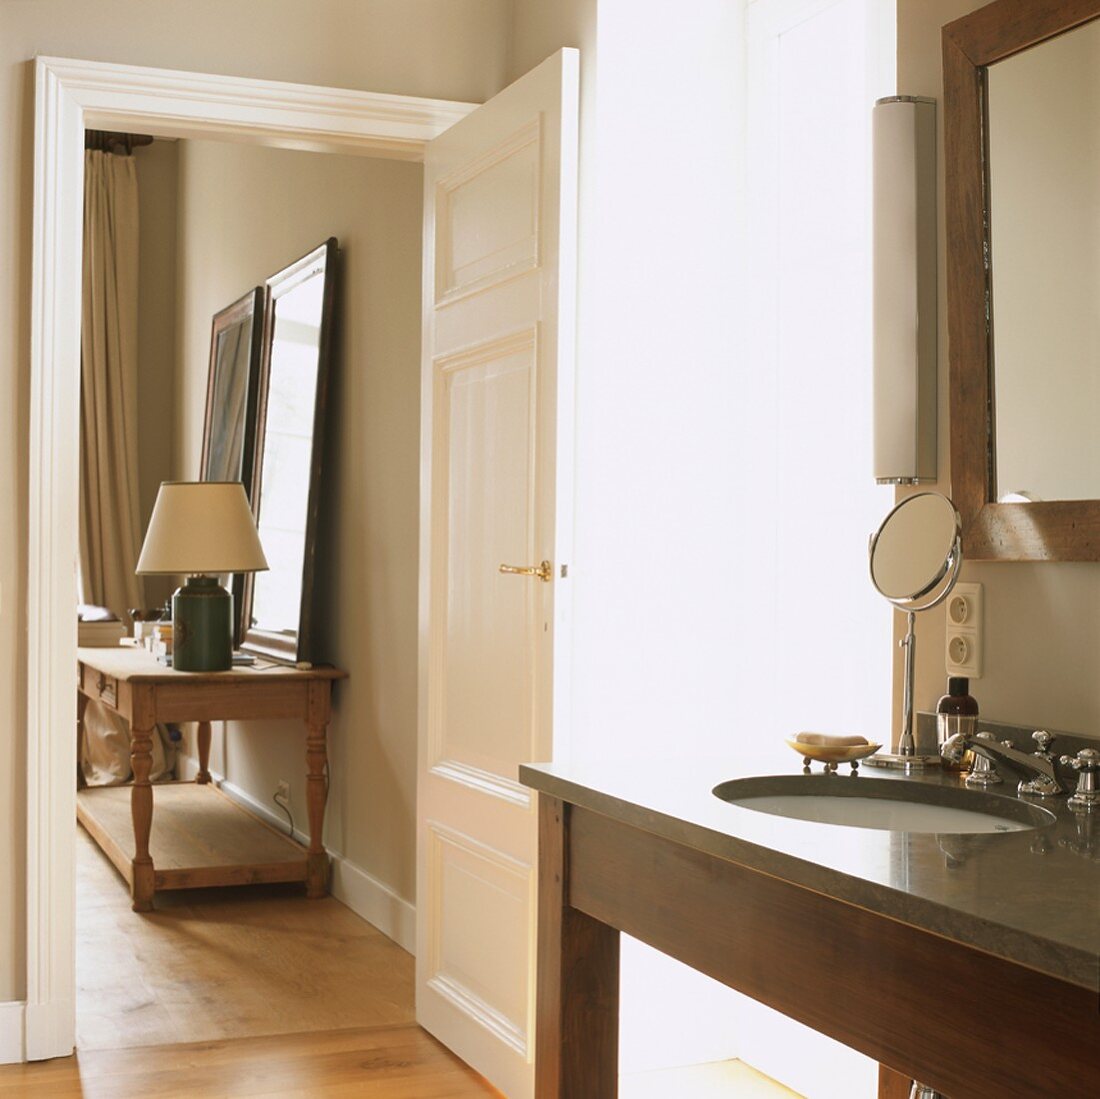 Durch die geöffnete Tür fällt der Blick vom Badezimmer in einen Nebenraum des elegant eingerichteten Wohnhauses